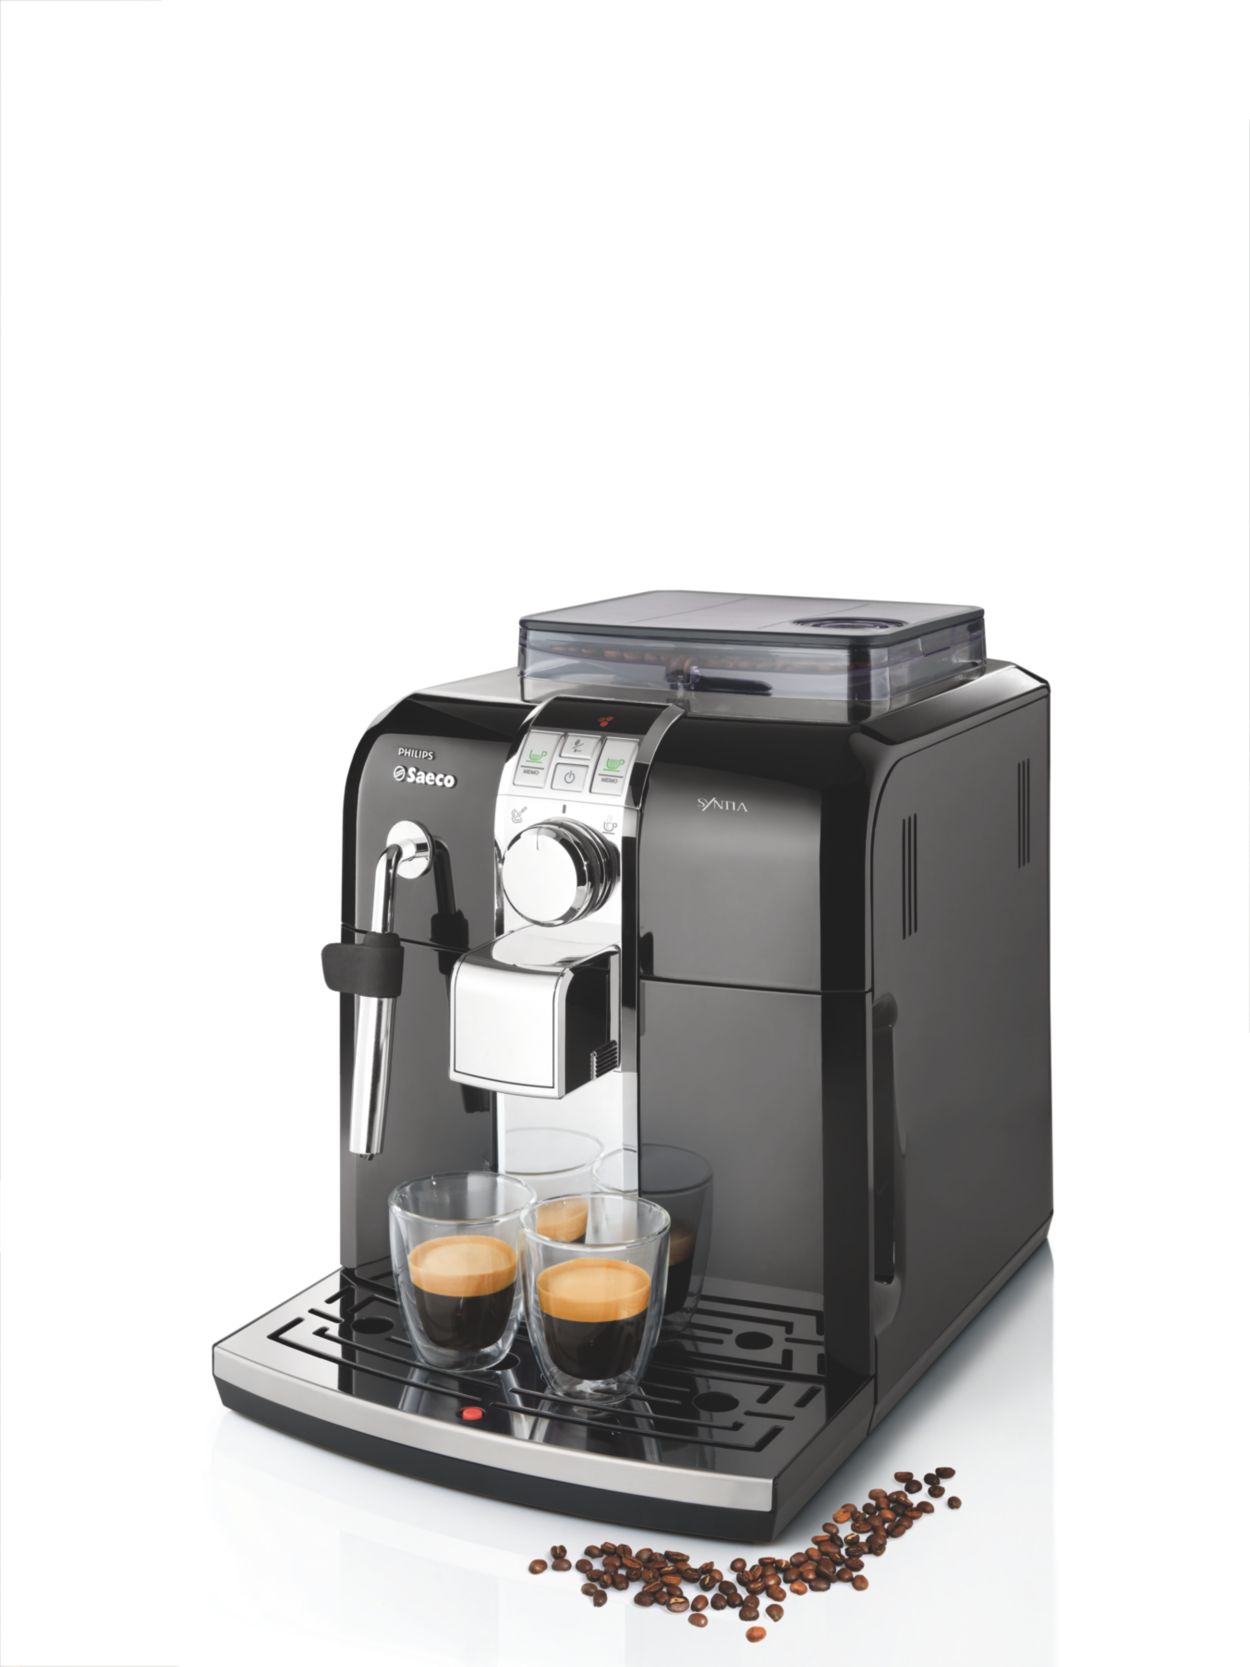 Syntia Cafetera espresso superautomática HD8833/43